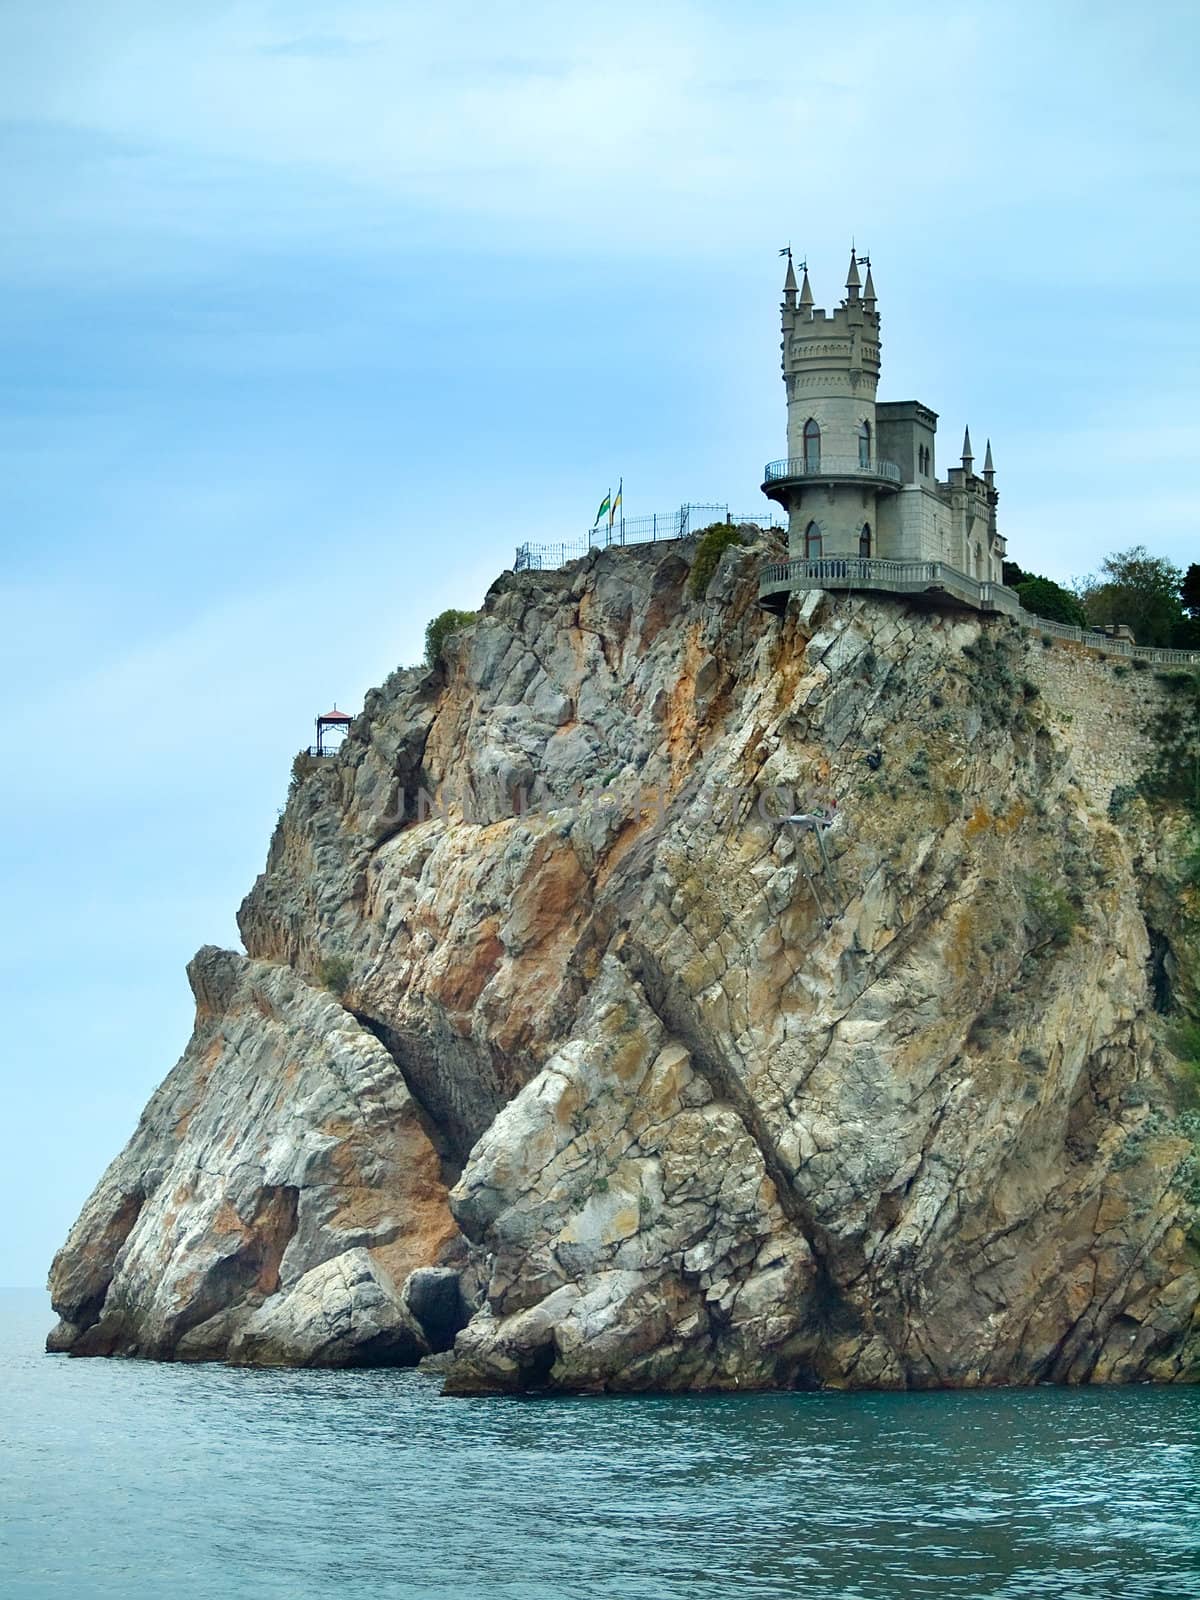 Swallow Nest old castle in Yalta, Crimea